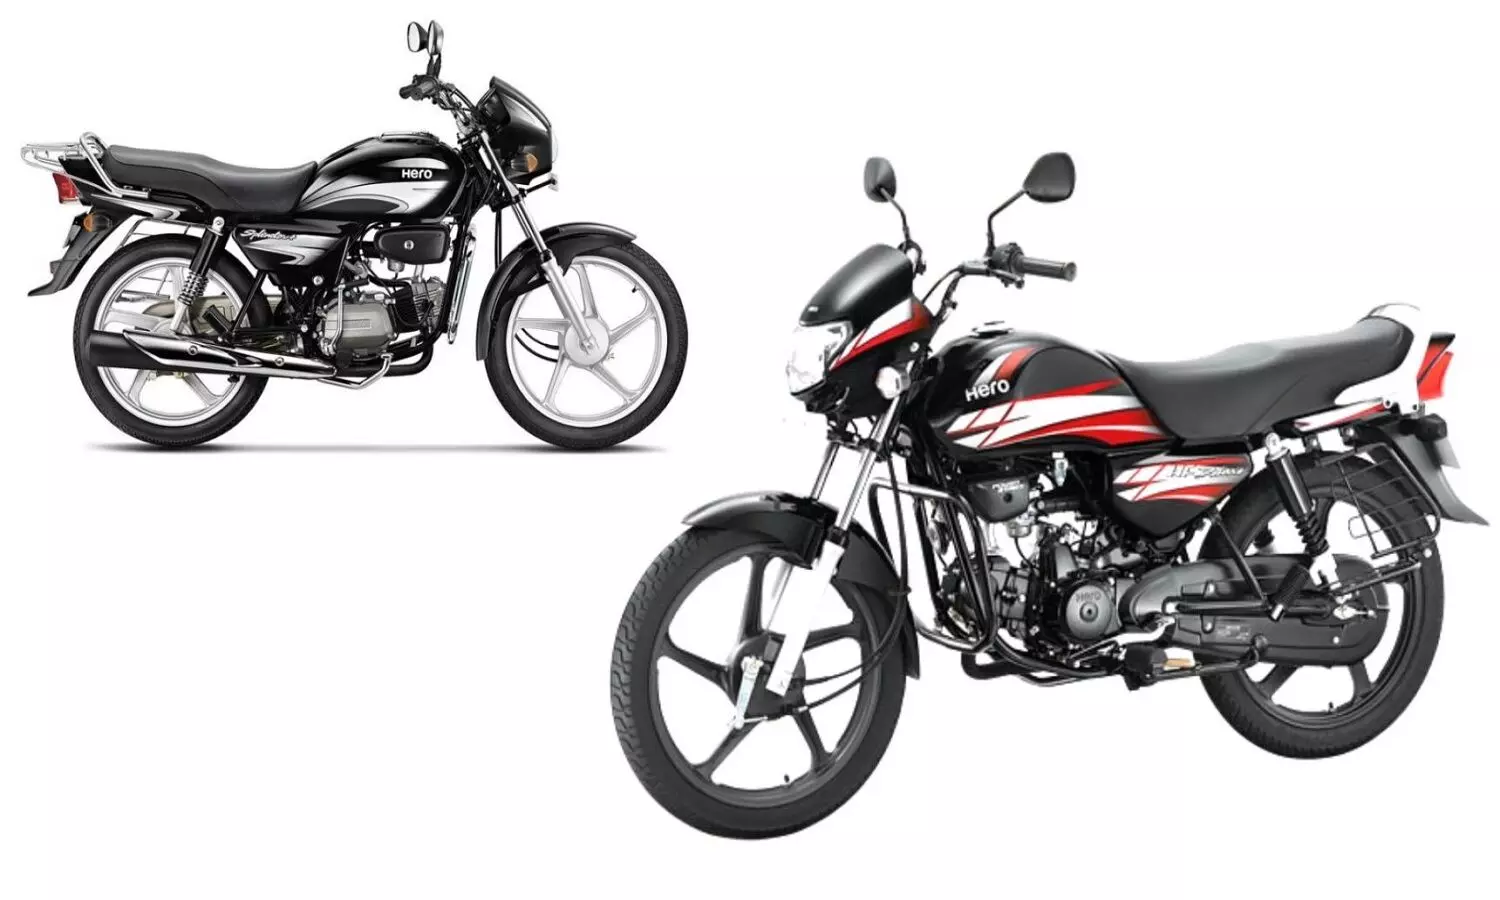 HF Deluxe और Splendor Plus में कौनसी बाइक है बेहतर, दोनों का कम्पेरिजन